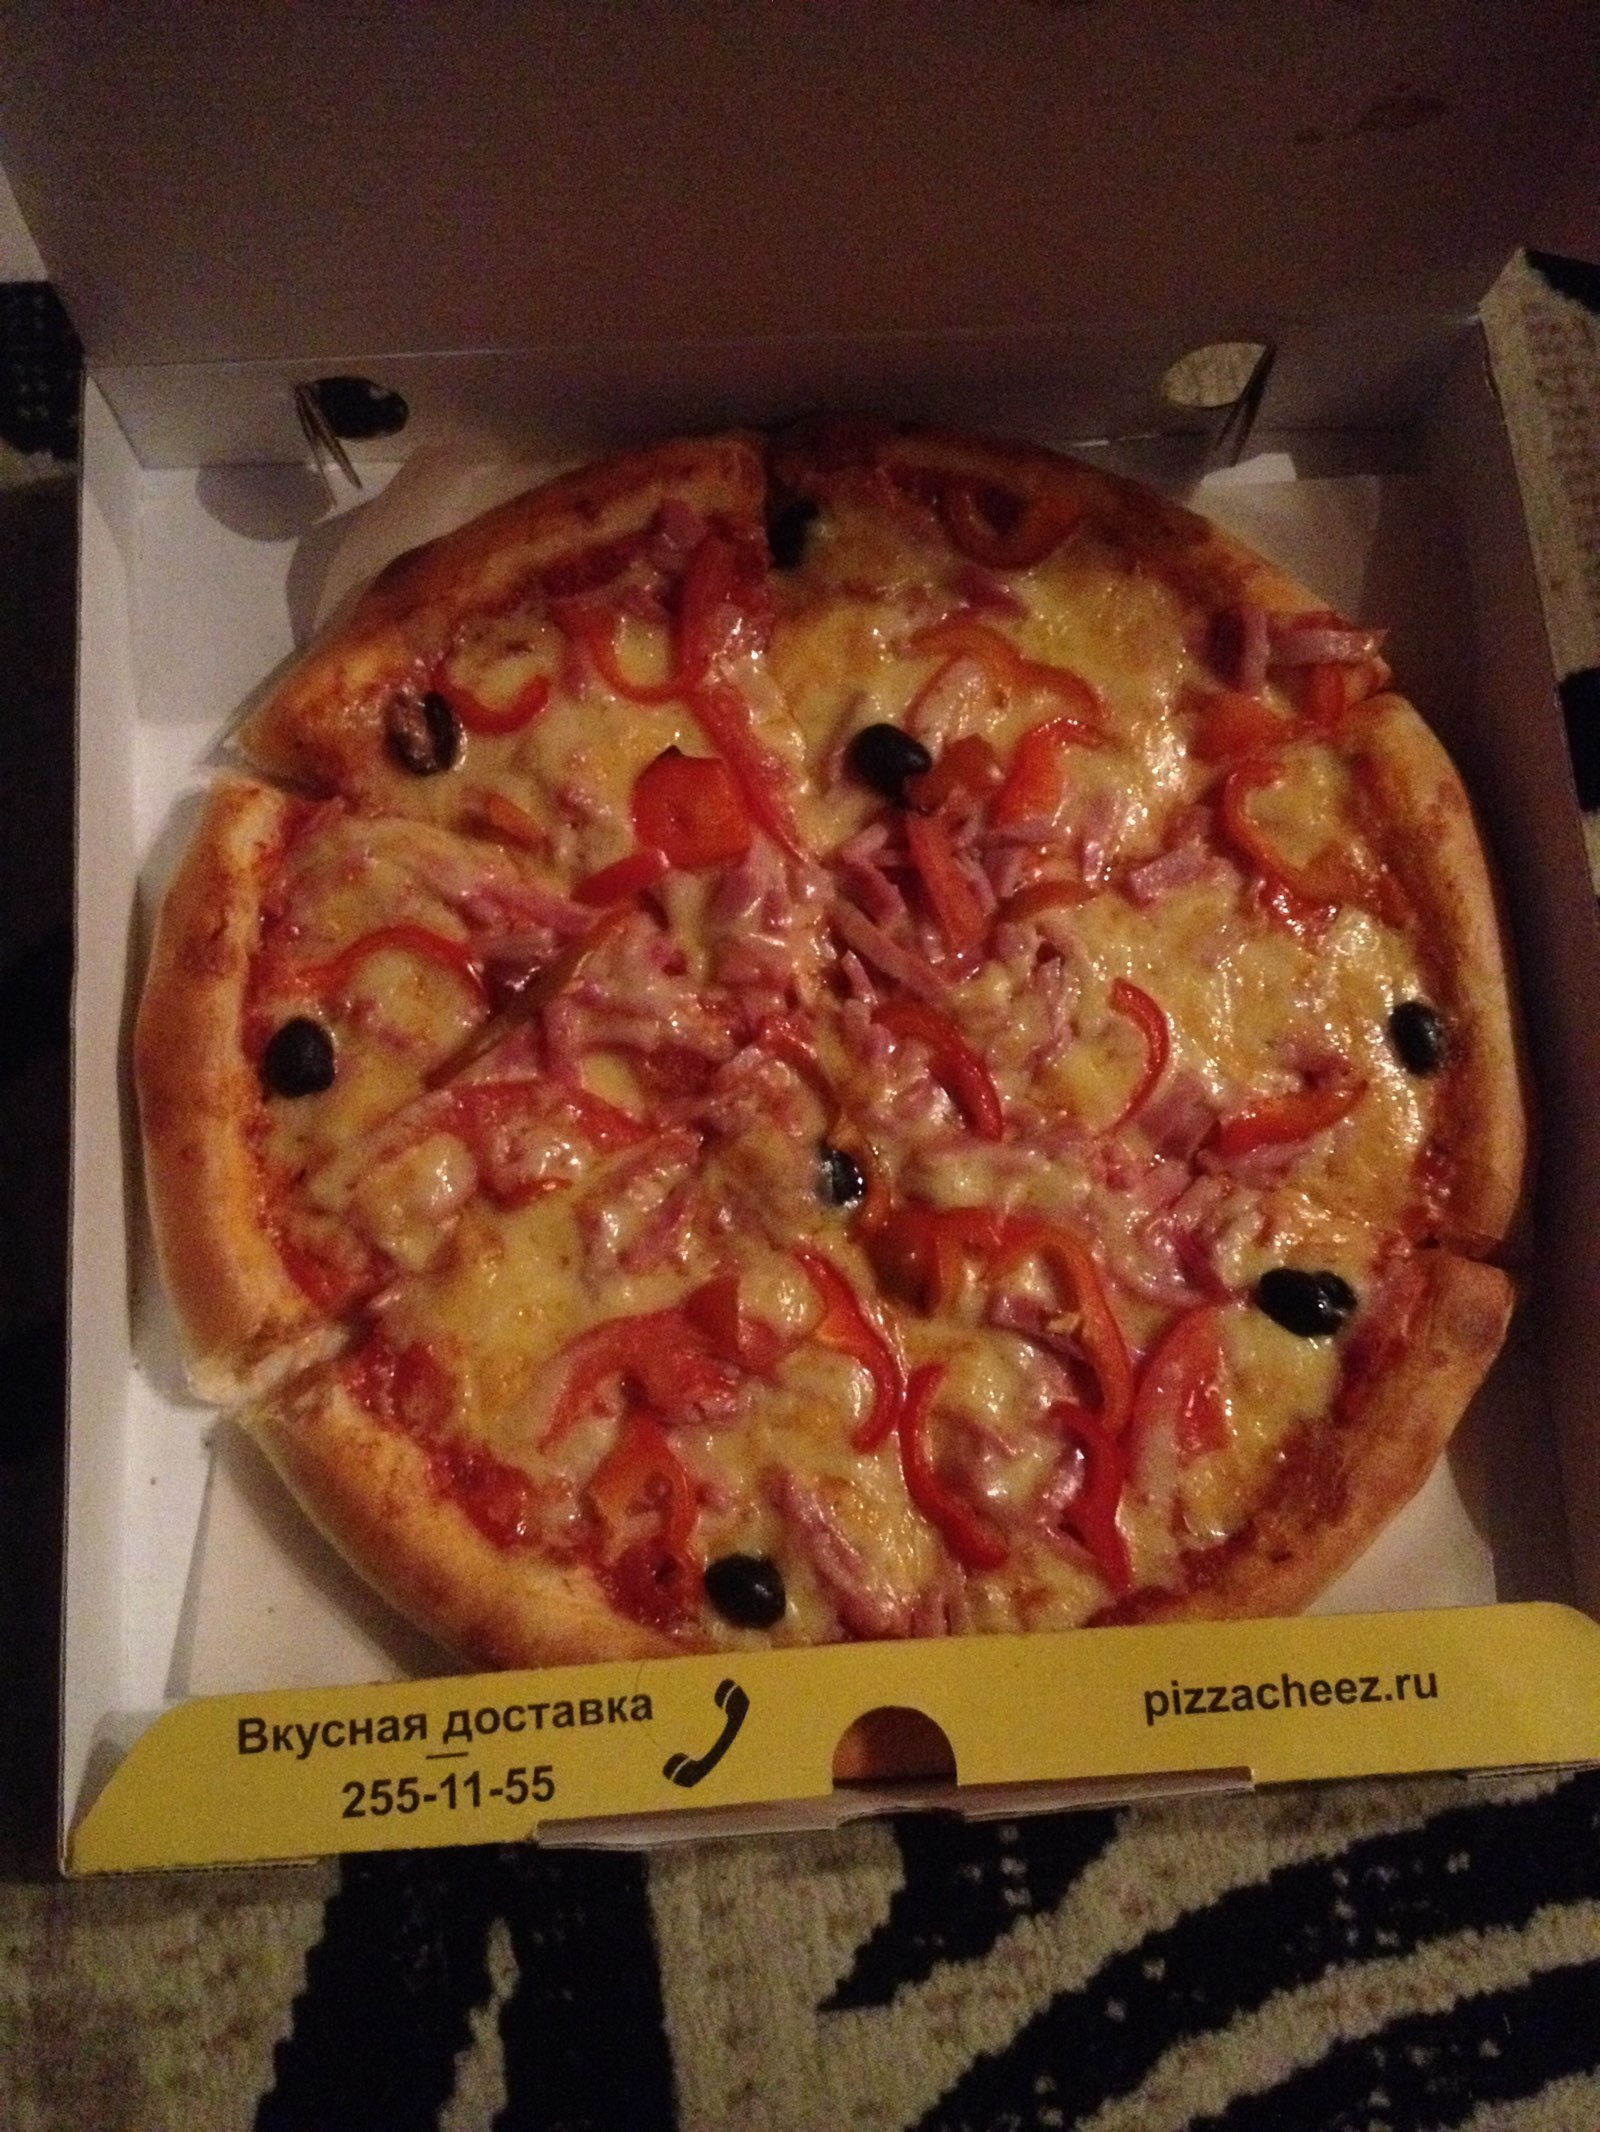 лучшая пицца с доставкой в красноярске рейтинг фото 14